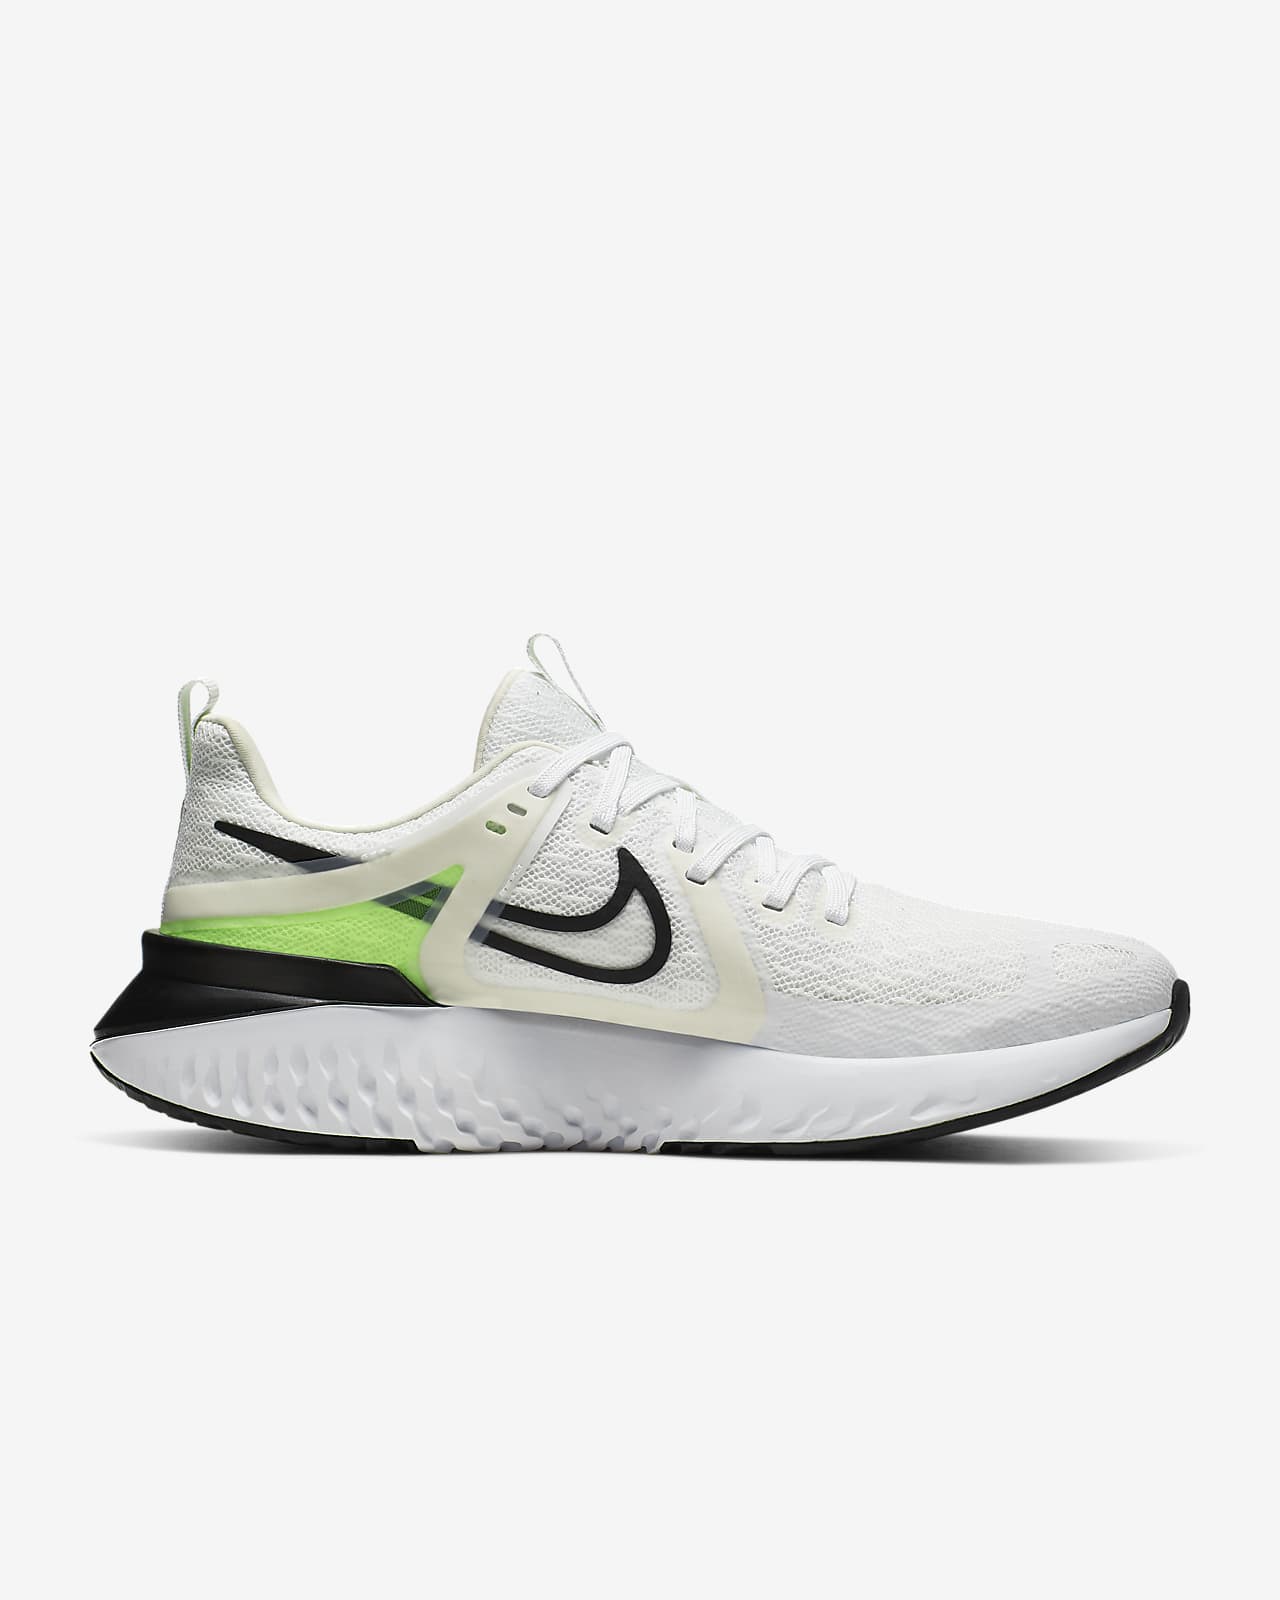 postura Lo siento Desilusión Nike Legend React 2 Men's Running Shoe. Nike LU